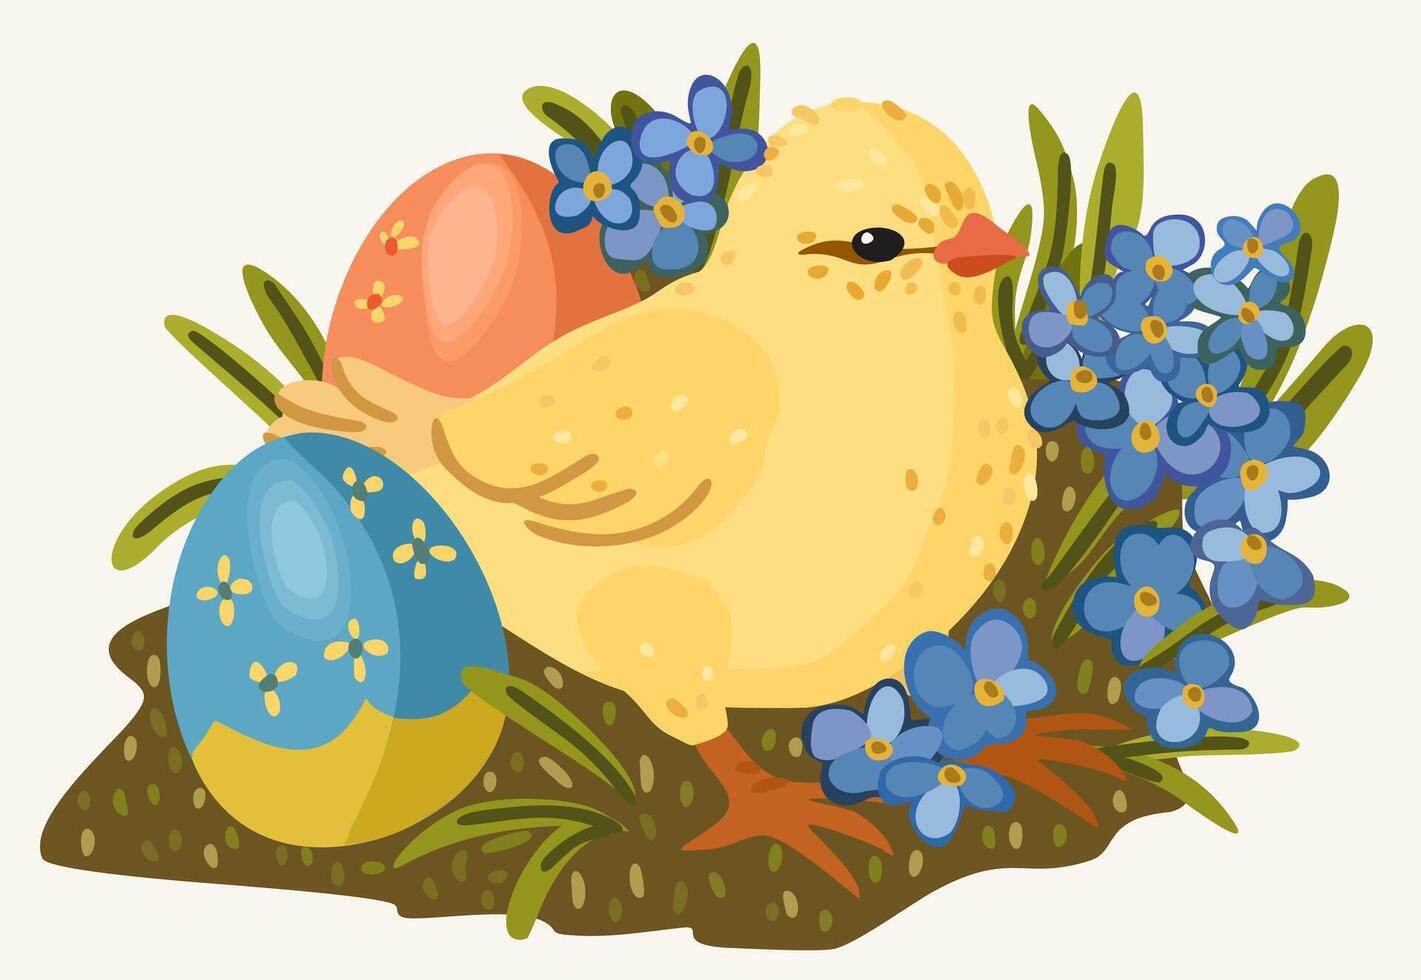 Pascua de Resurrección polluelo con de colores decorativo Pascua de Resurrección huevos y primavera flores vector aislado ilustración